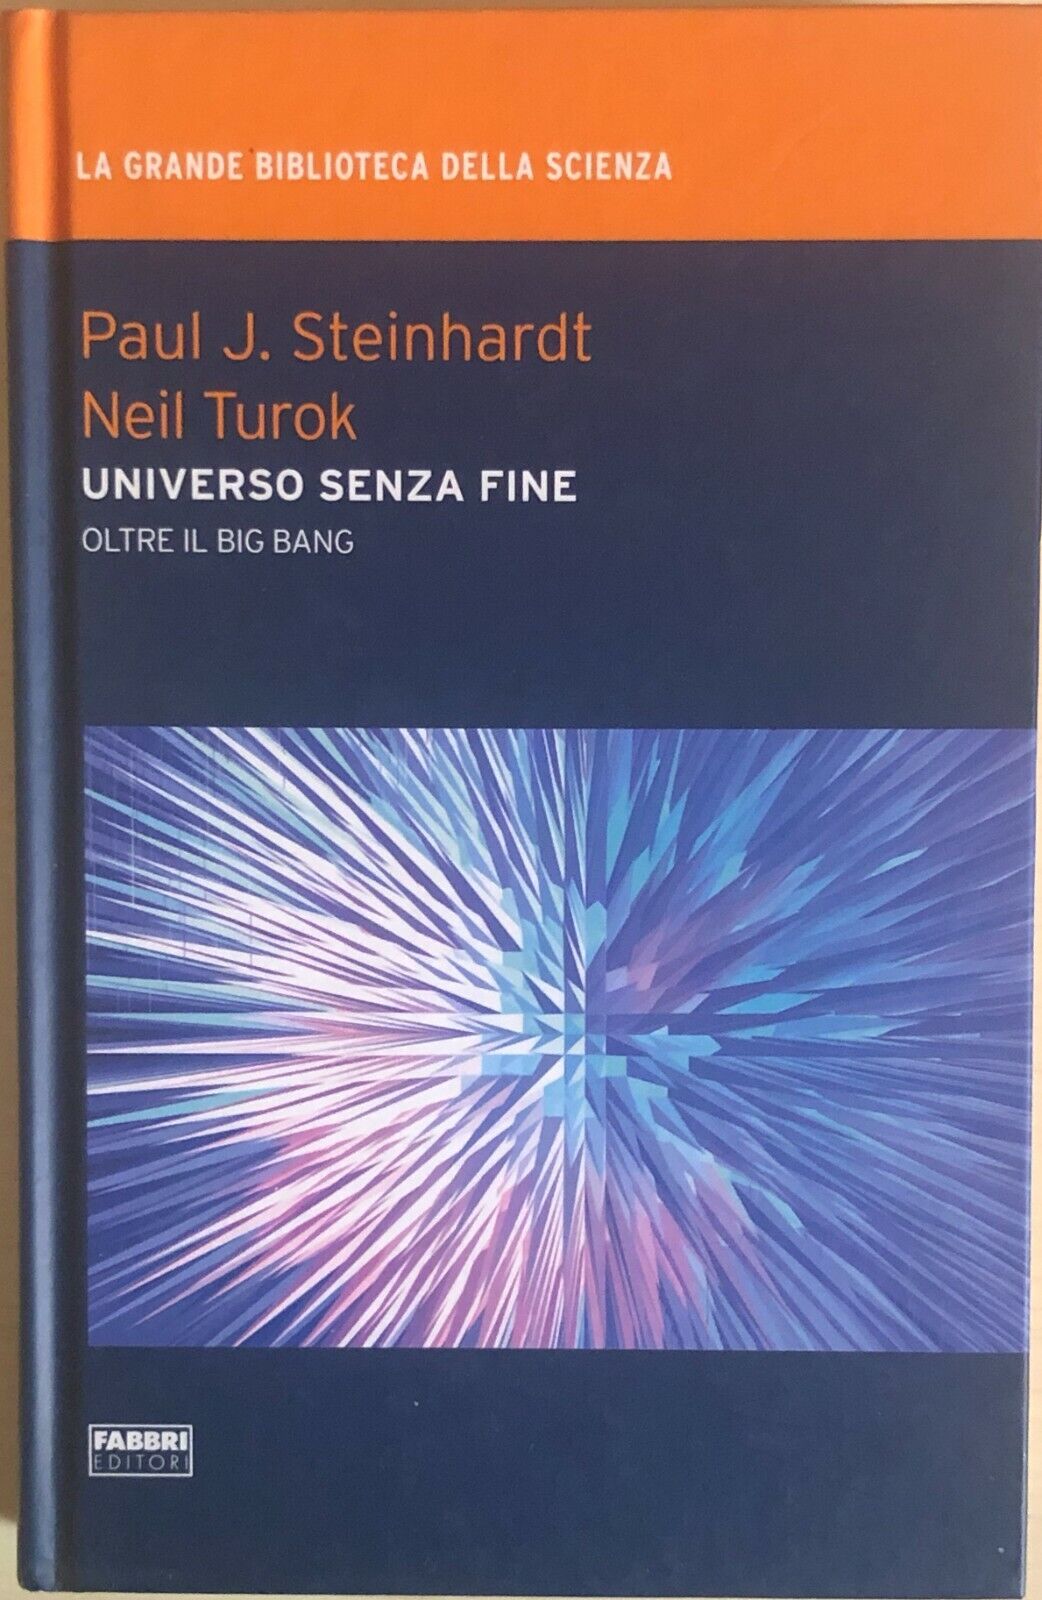 Universo senza fine di AA.VV., 2009, Fabbri editori